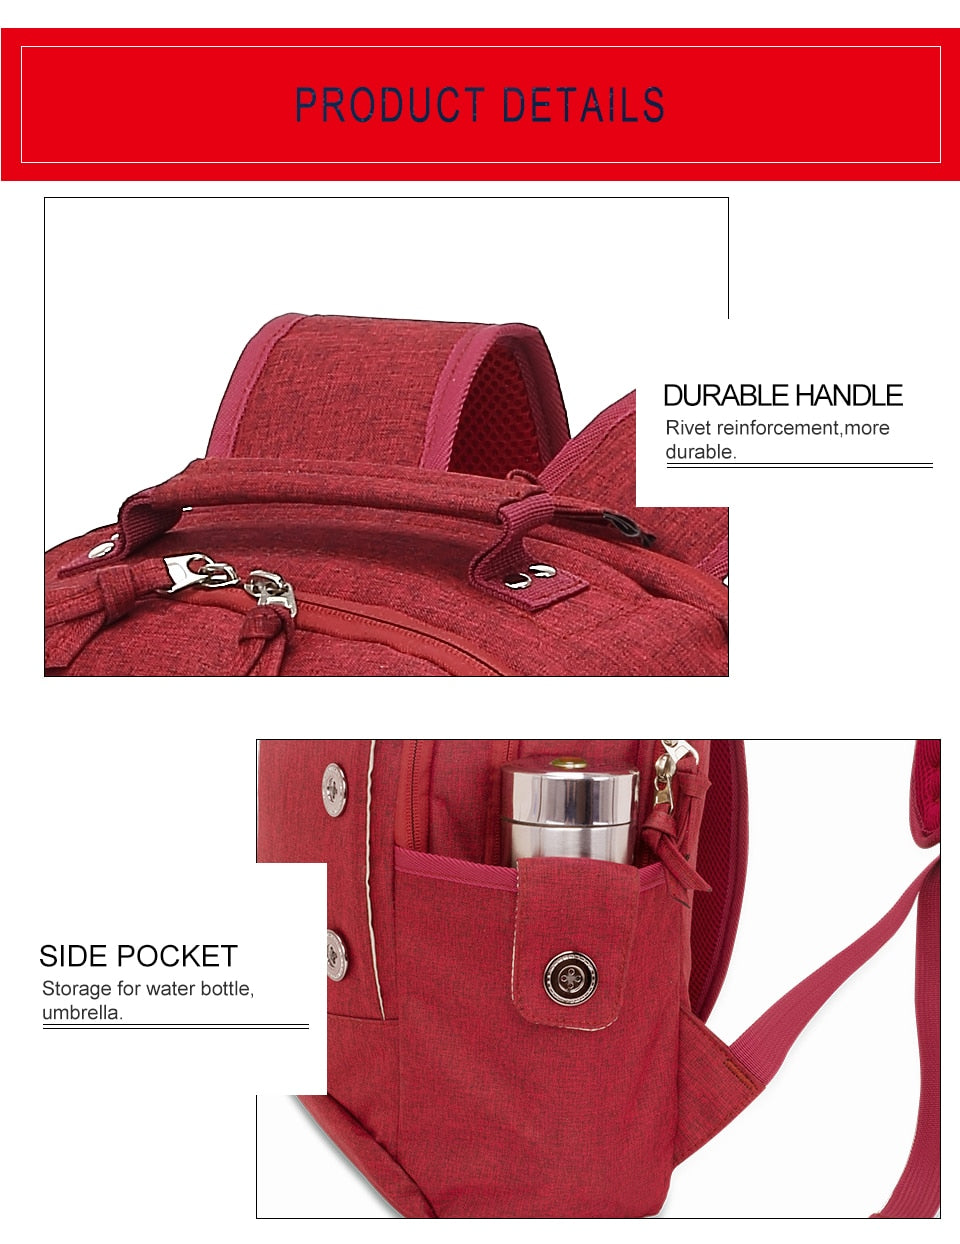 Women's Waterproof Business Stylish Backpack Red - Walmel